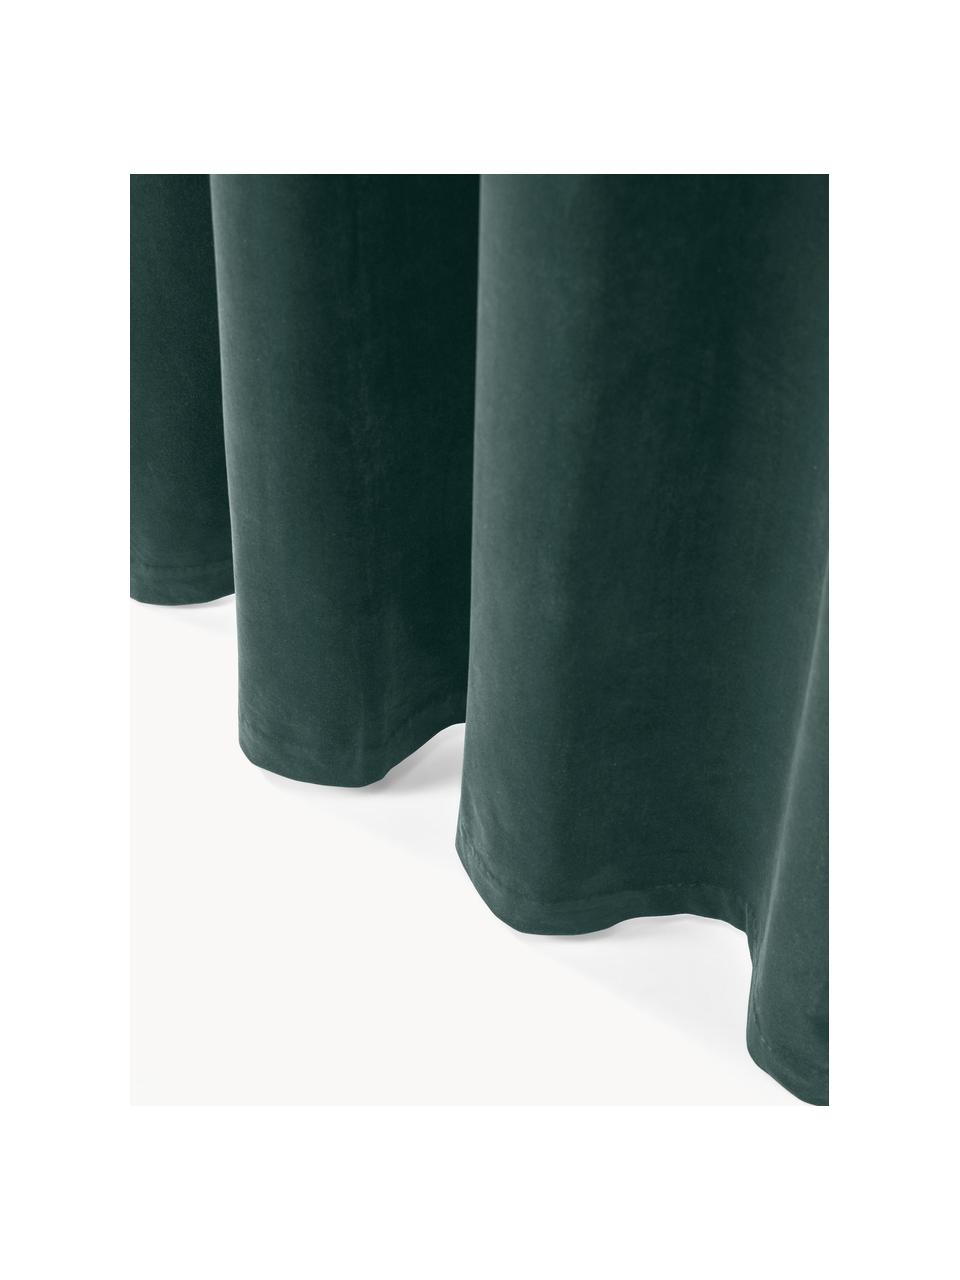 Abdunkelnder Samt-Vorhang Rush mit Ösen, 2 Stück, 100 % Polyester (recycled), GRS-zertifiziert, Dunkelgrün, B 135 x L 260 cm